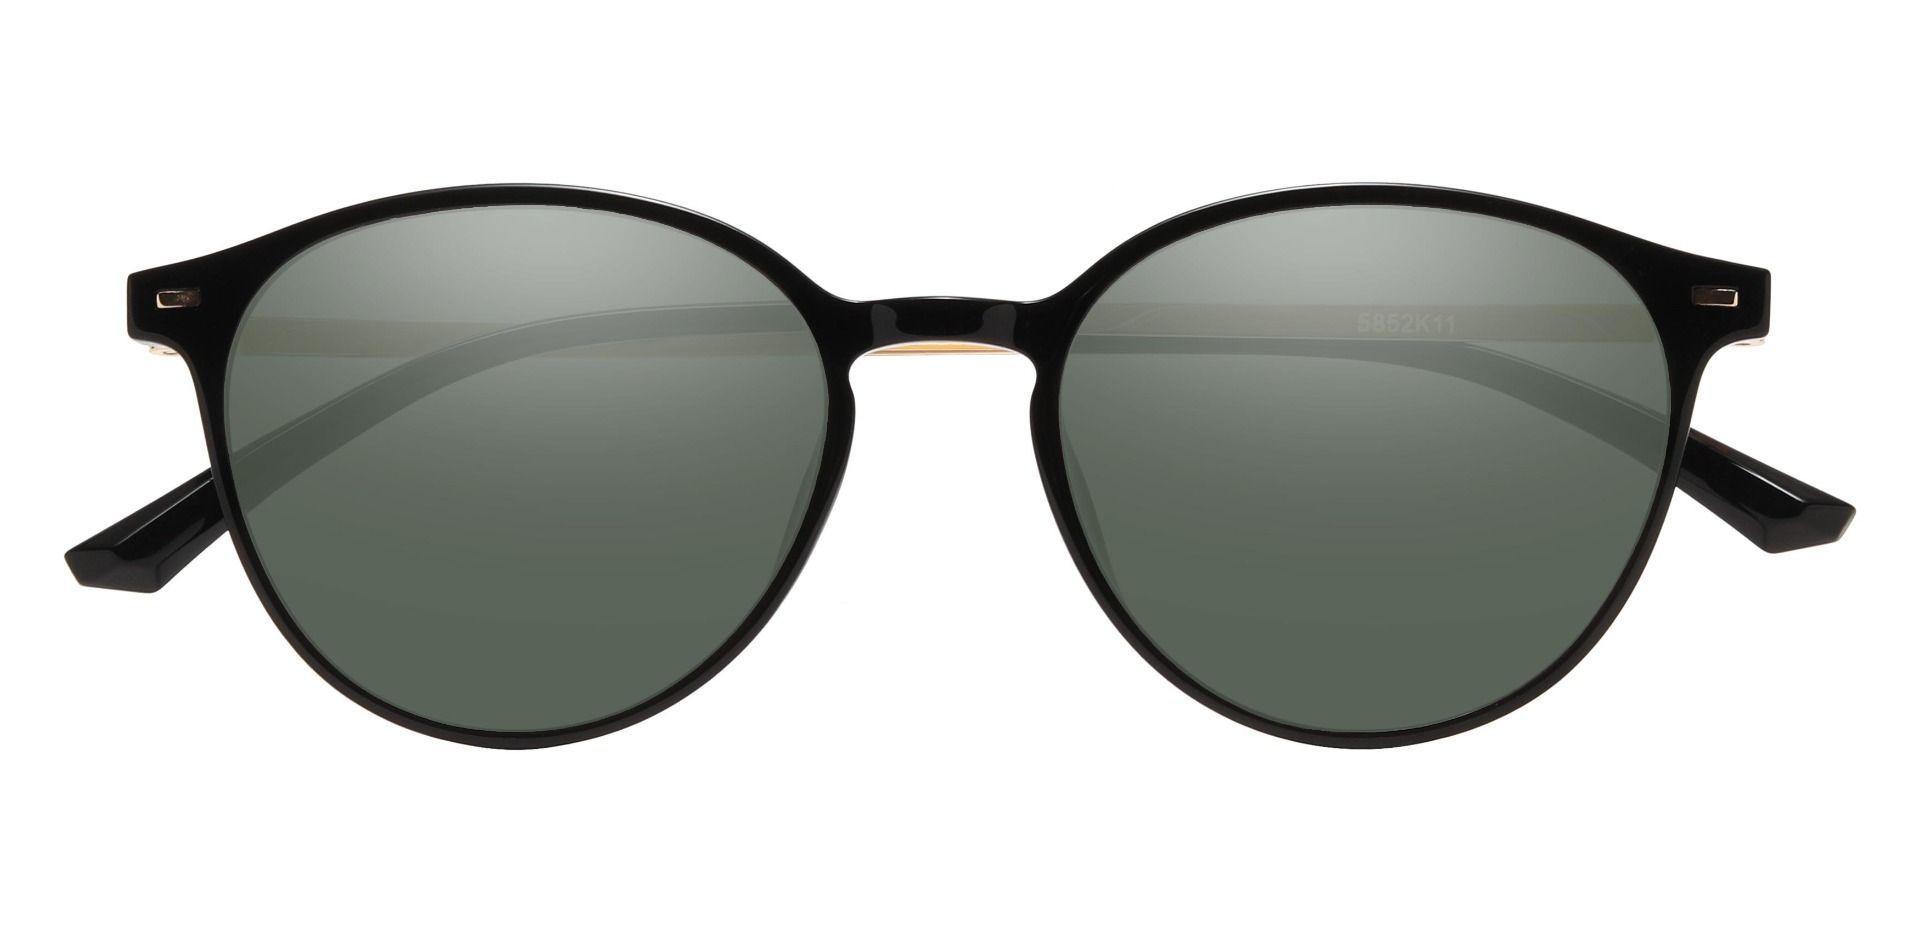 Springer Round Non-Rx Sunglasses - Black Frame With Green Lenses